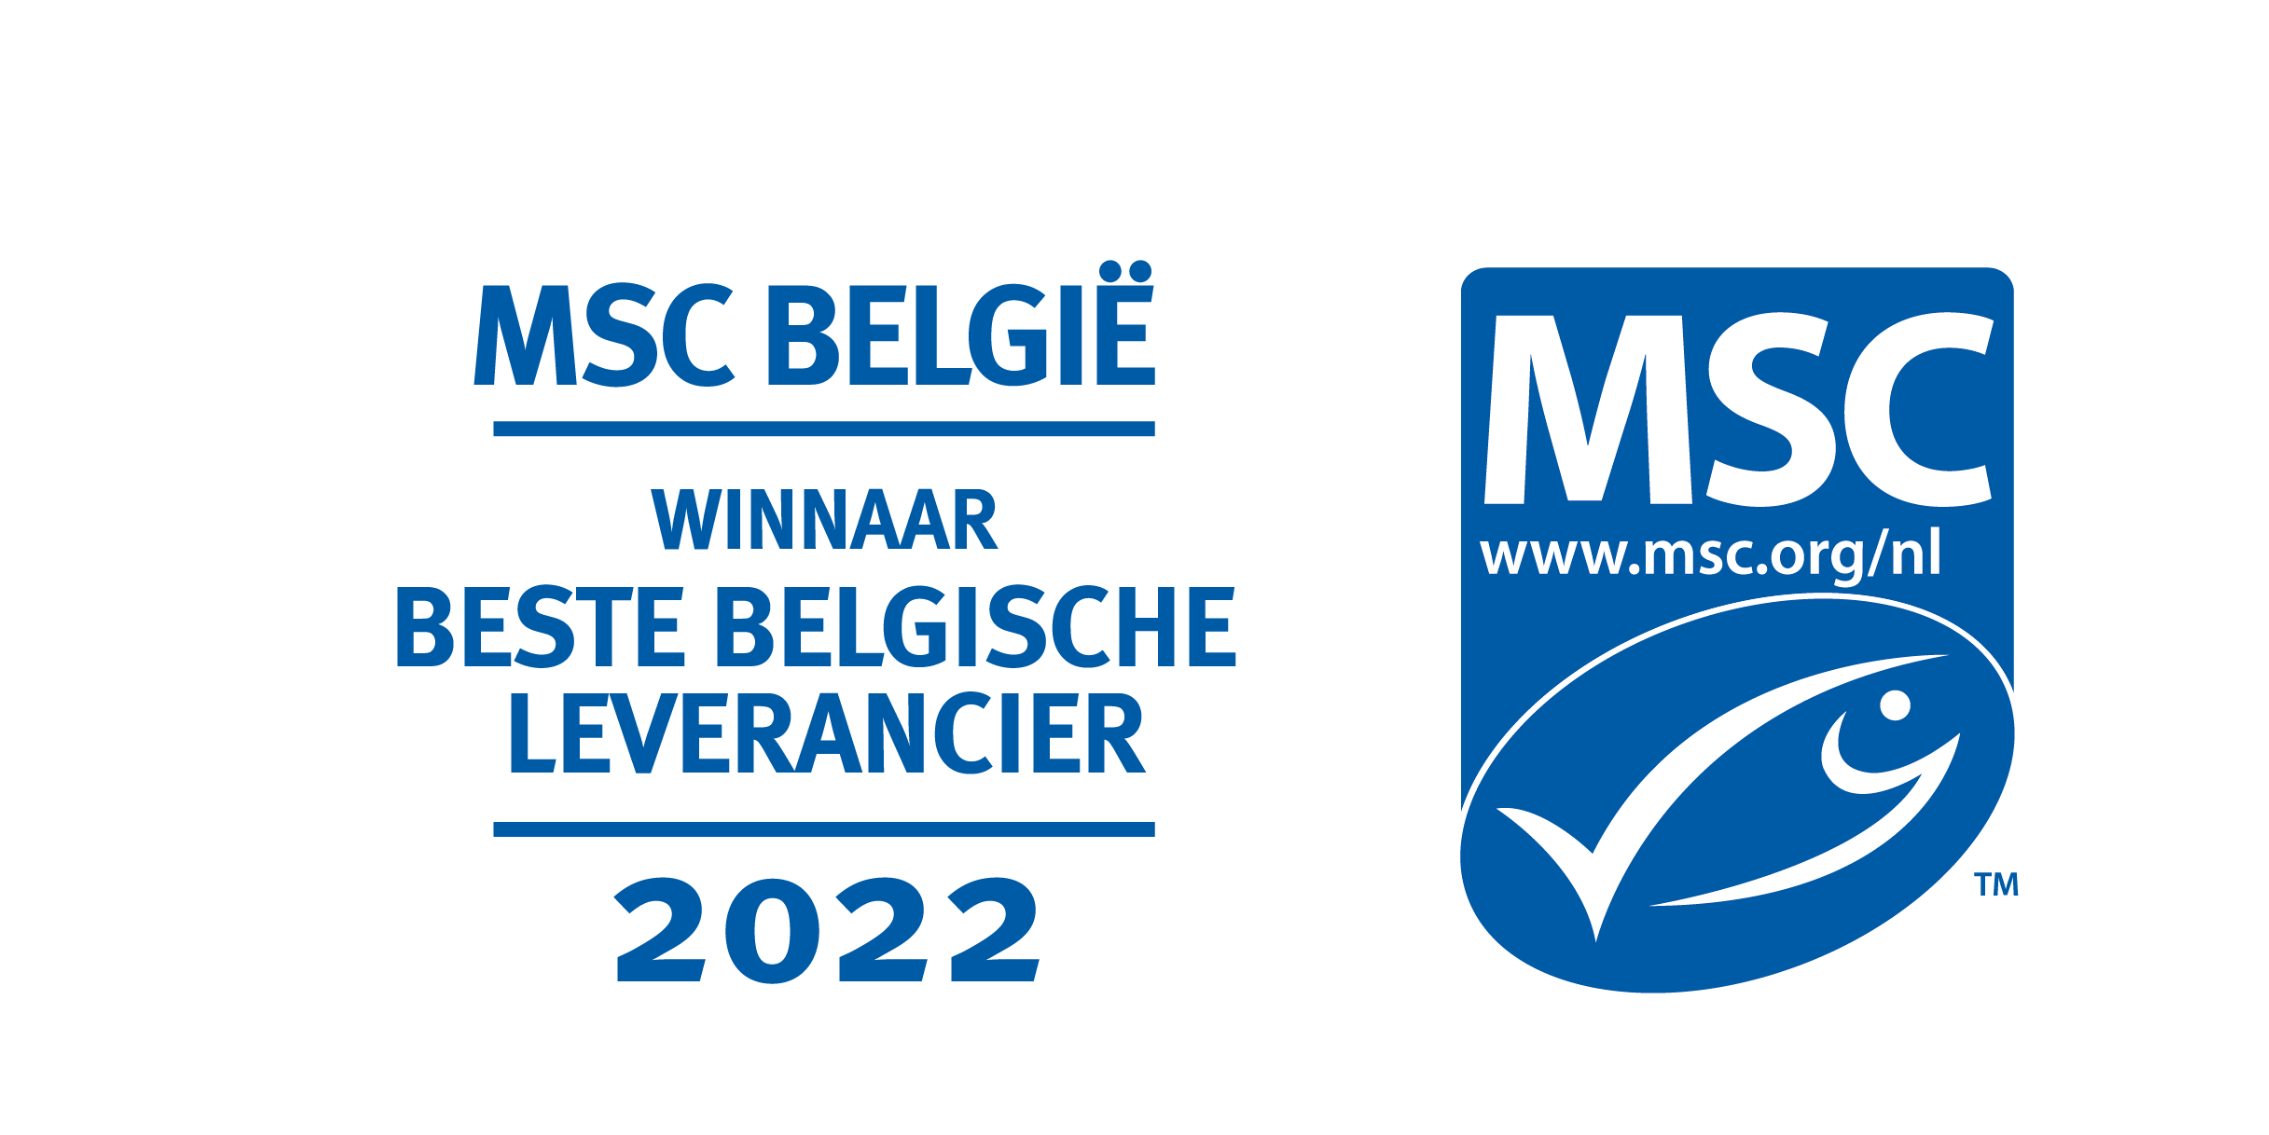 MSC Belgie 2022